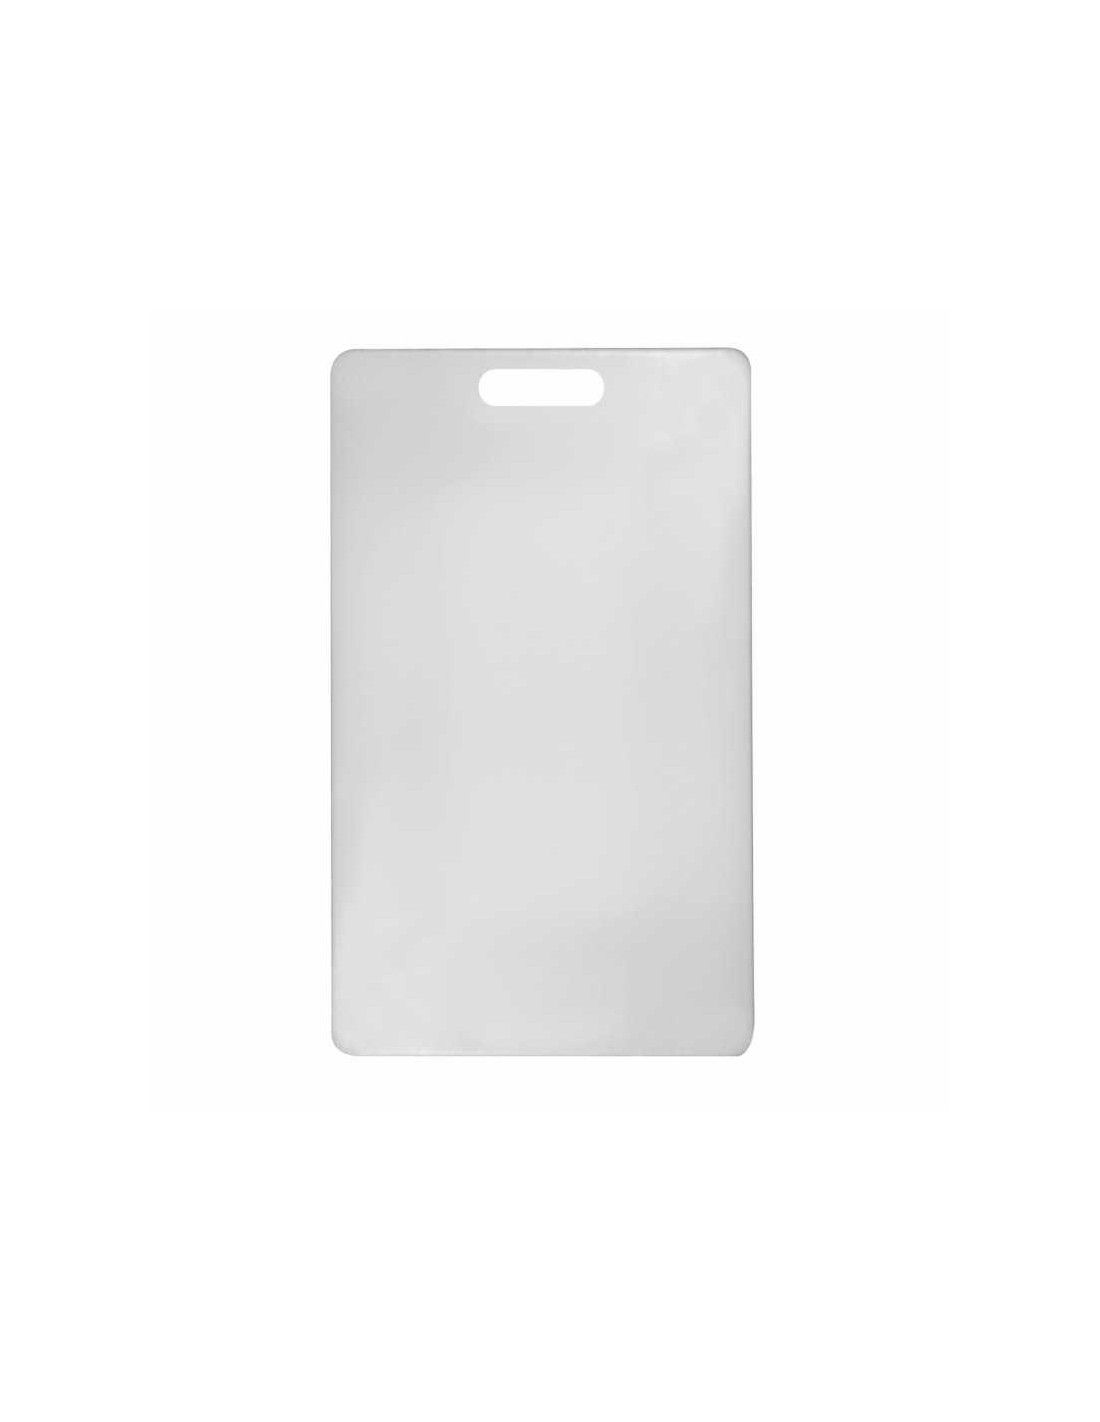 Tabla de picar 15x20 blanca Winco - Jopco Equipos y Productos para